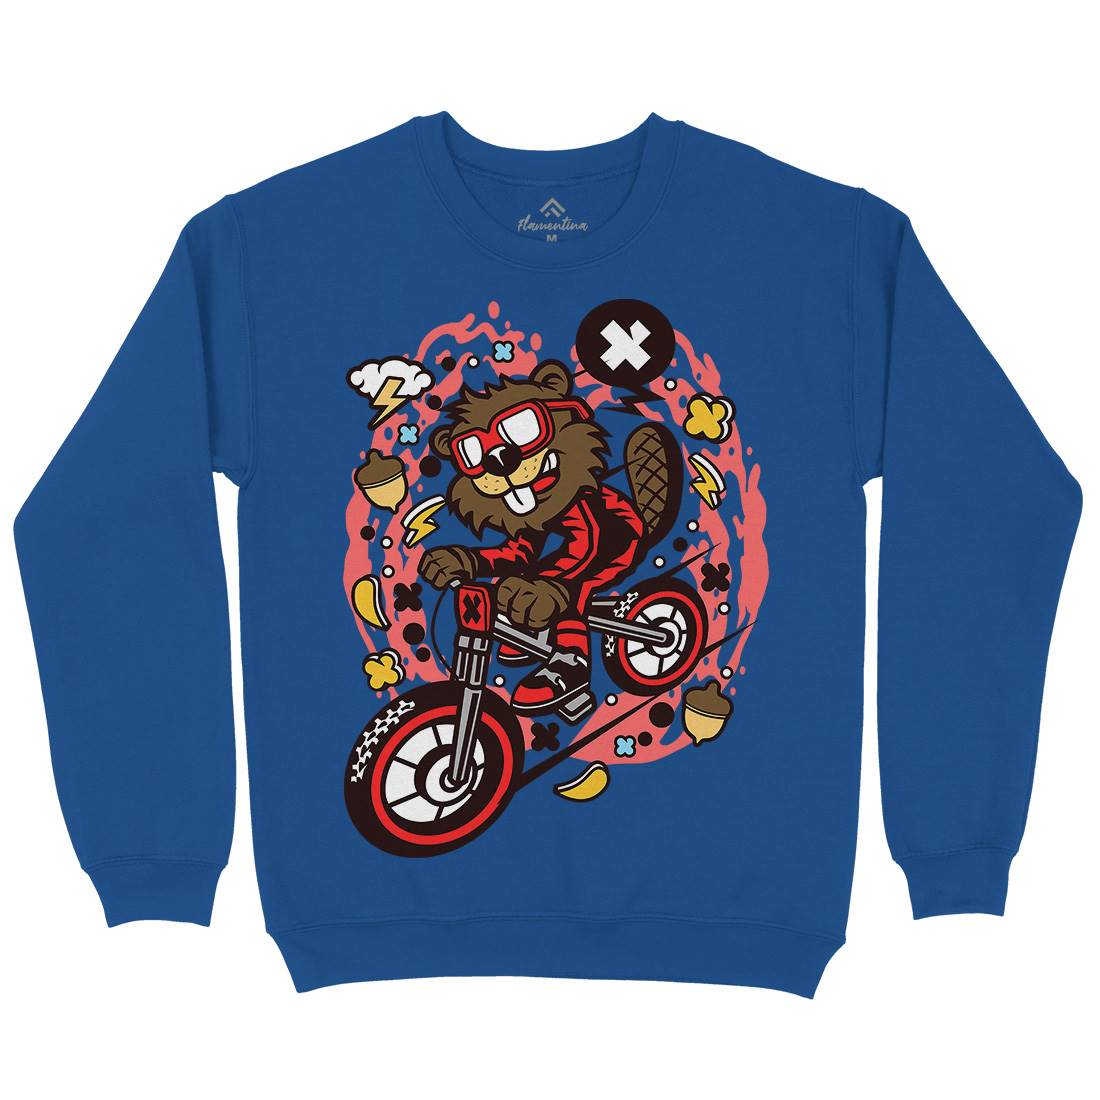 Beaver Downhill Kids Crew Neck Sweatshirt Bikes C493